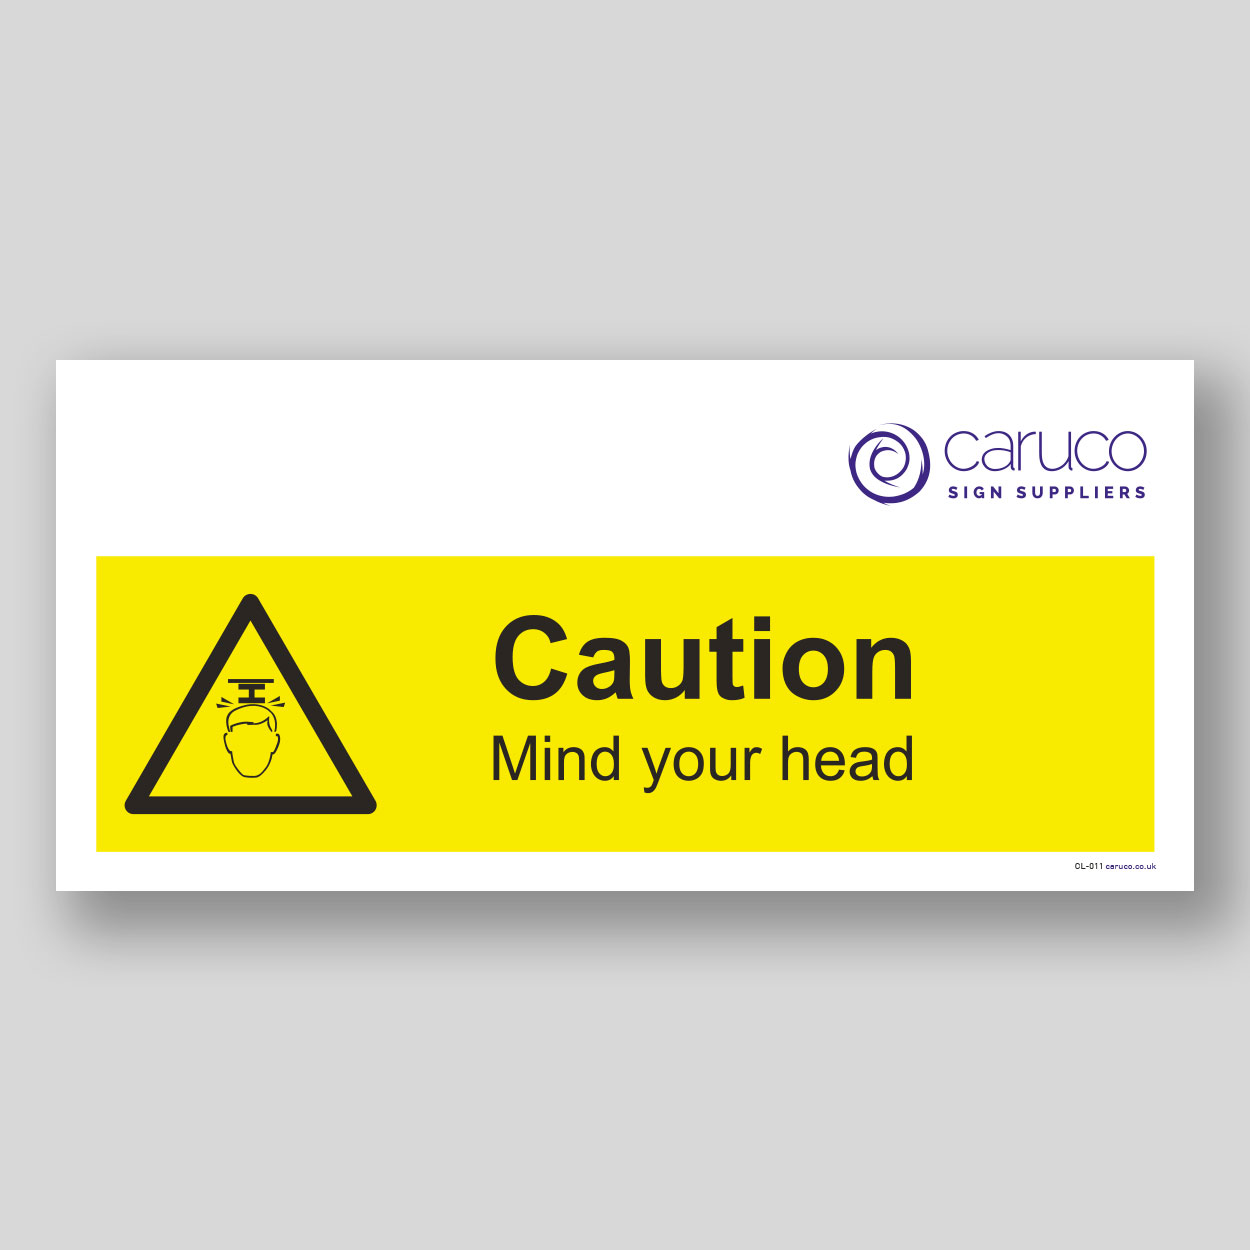 CL-011 Caution - mind your head